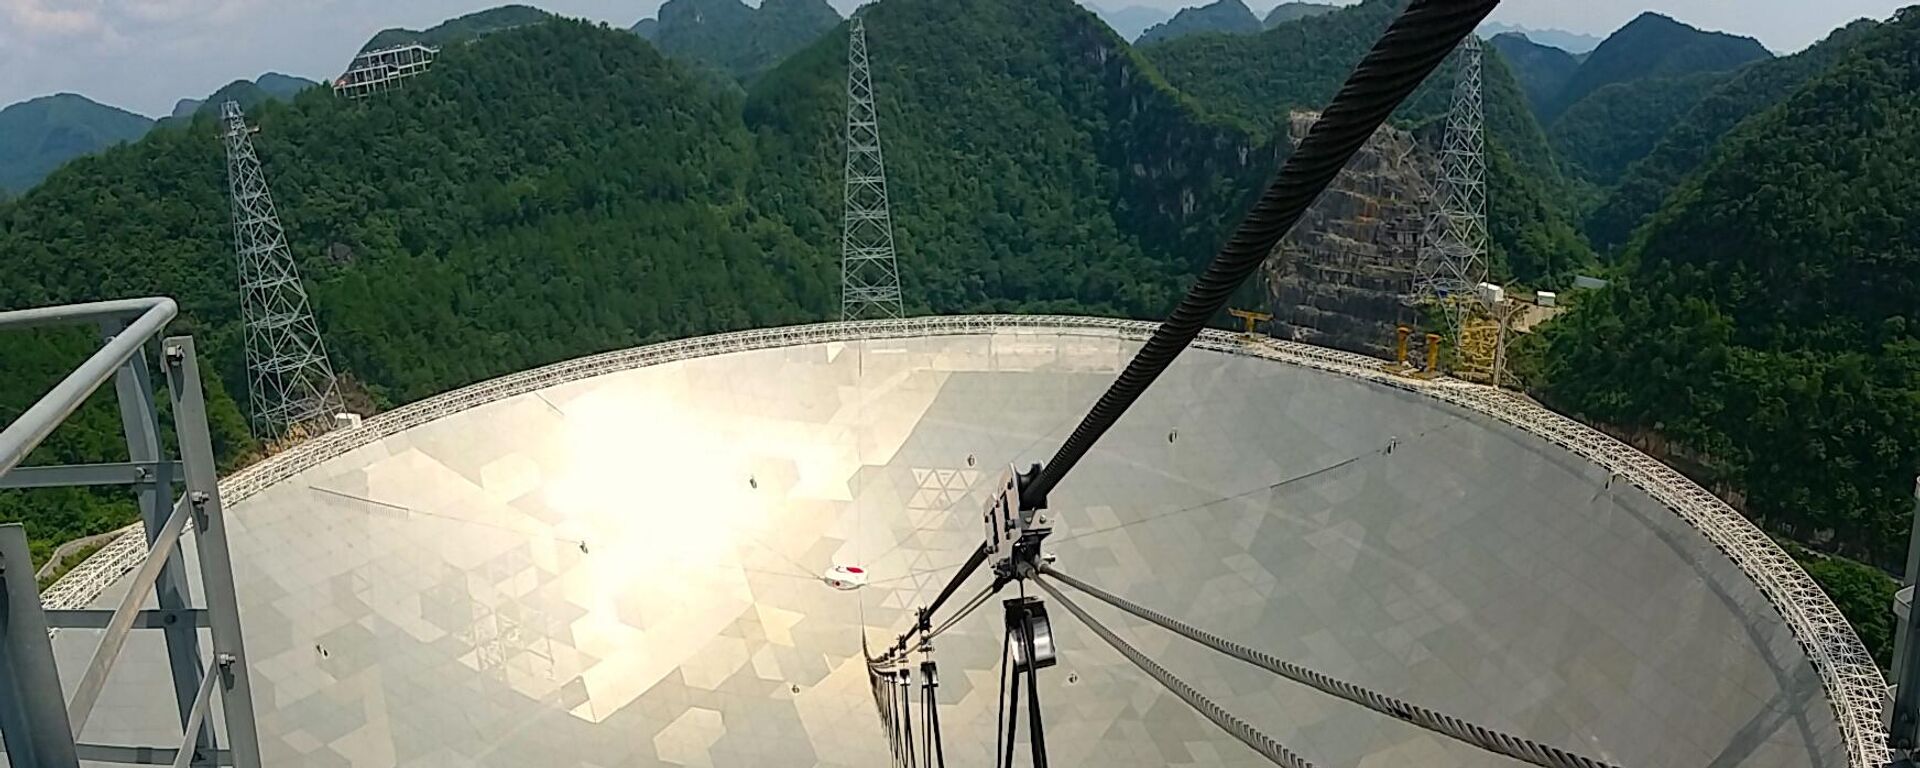 Radiotelescopio FAST, el más grande del mundo - Sputnik Mundo, 1920, 25.02.2021